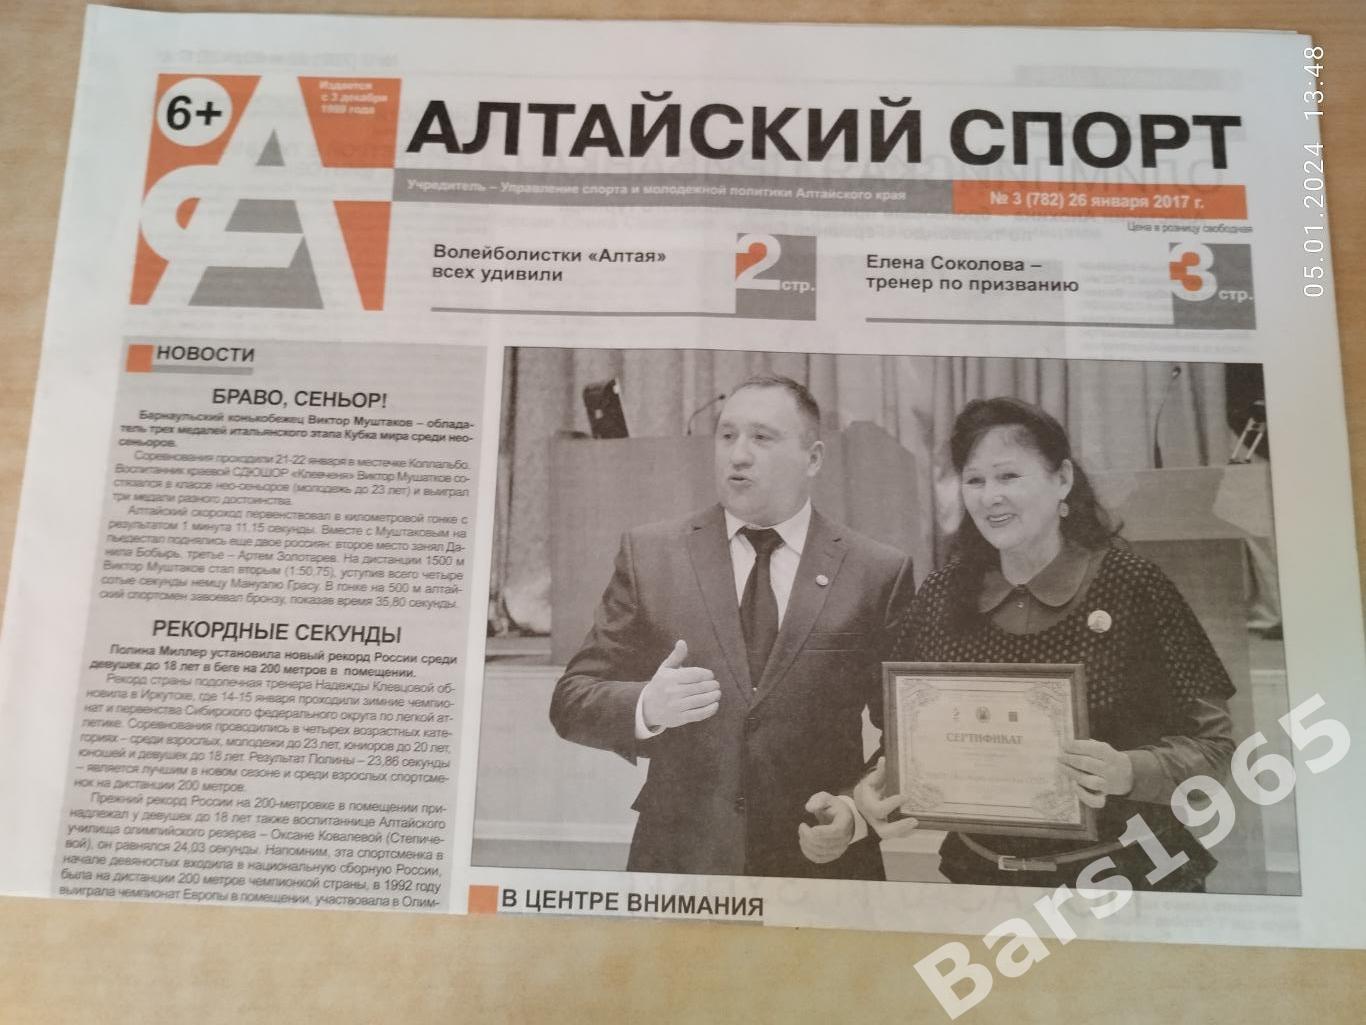 Алтайский спорт № 3 (782) 26 января 2017